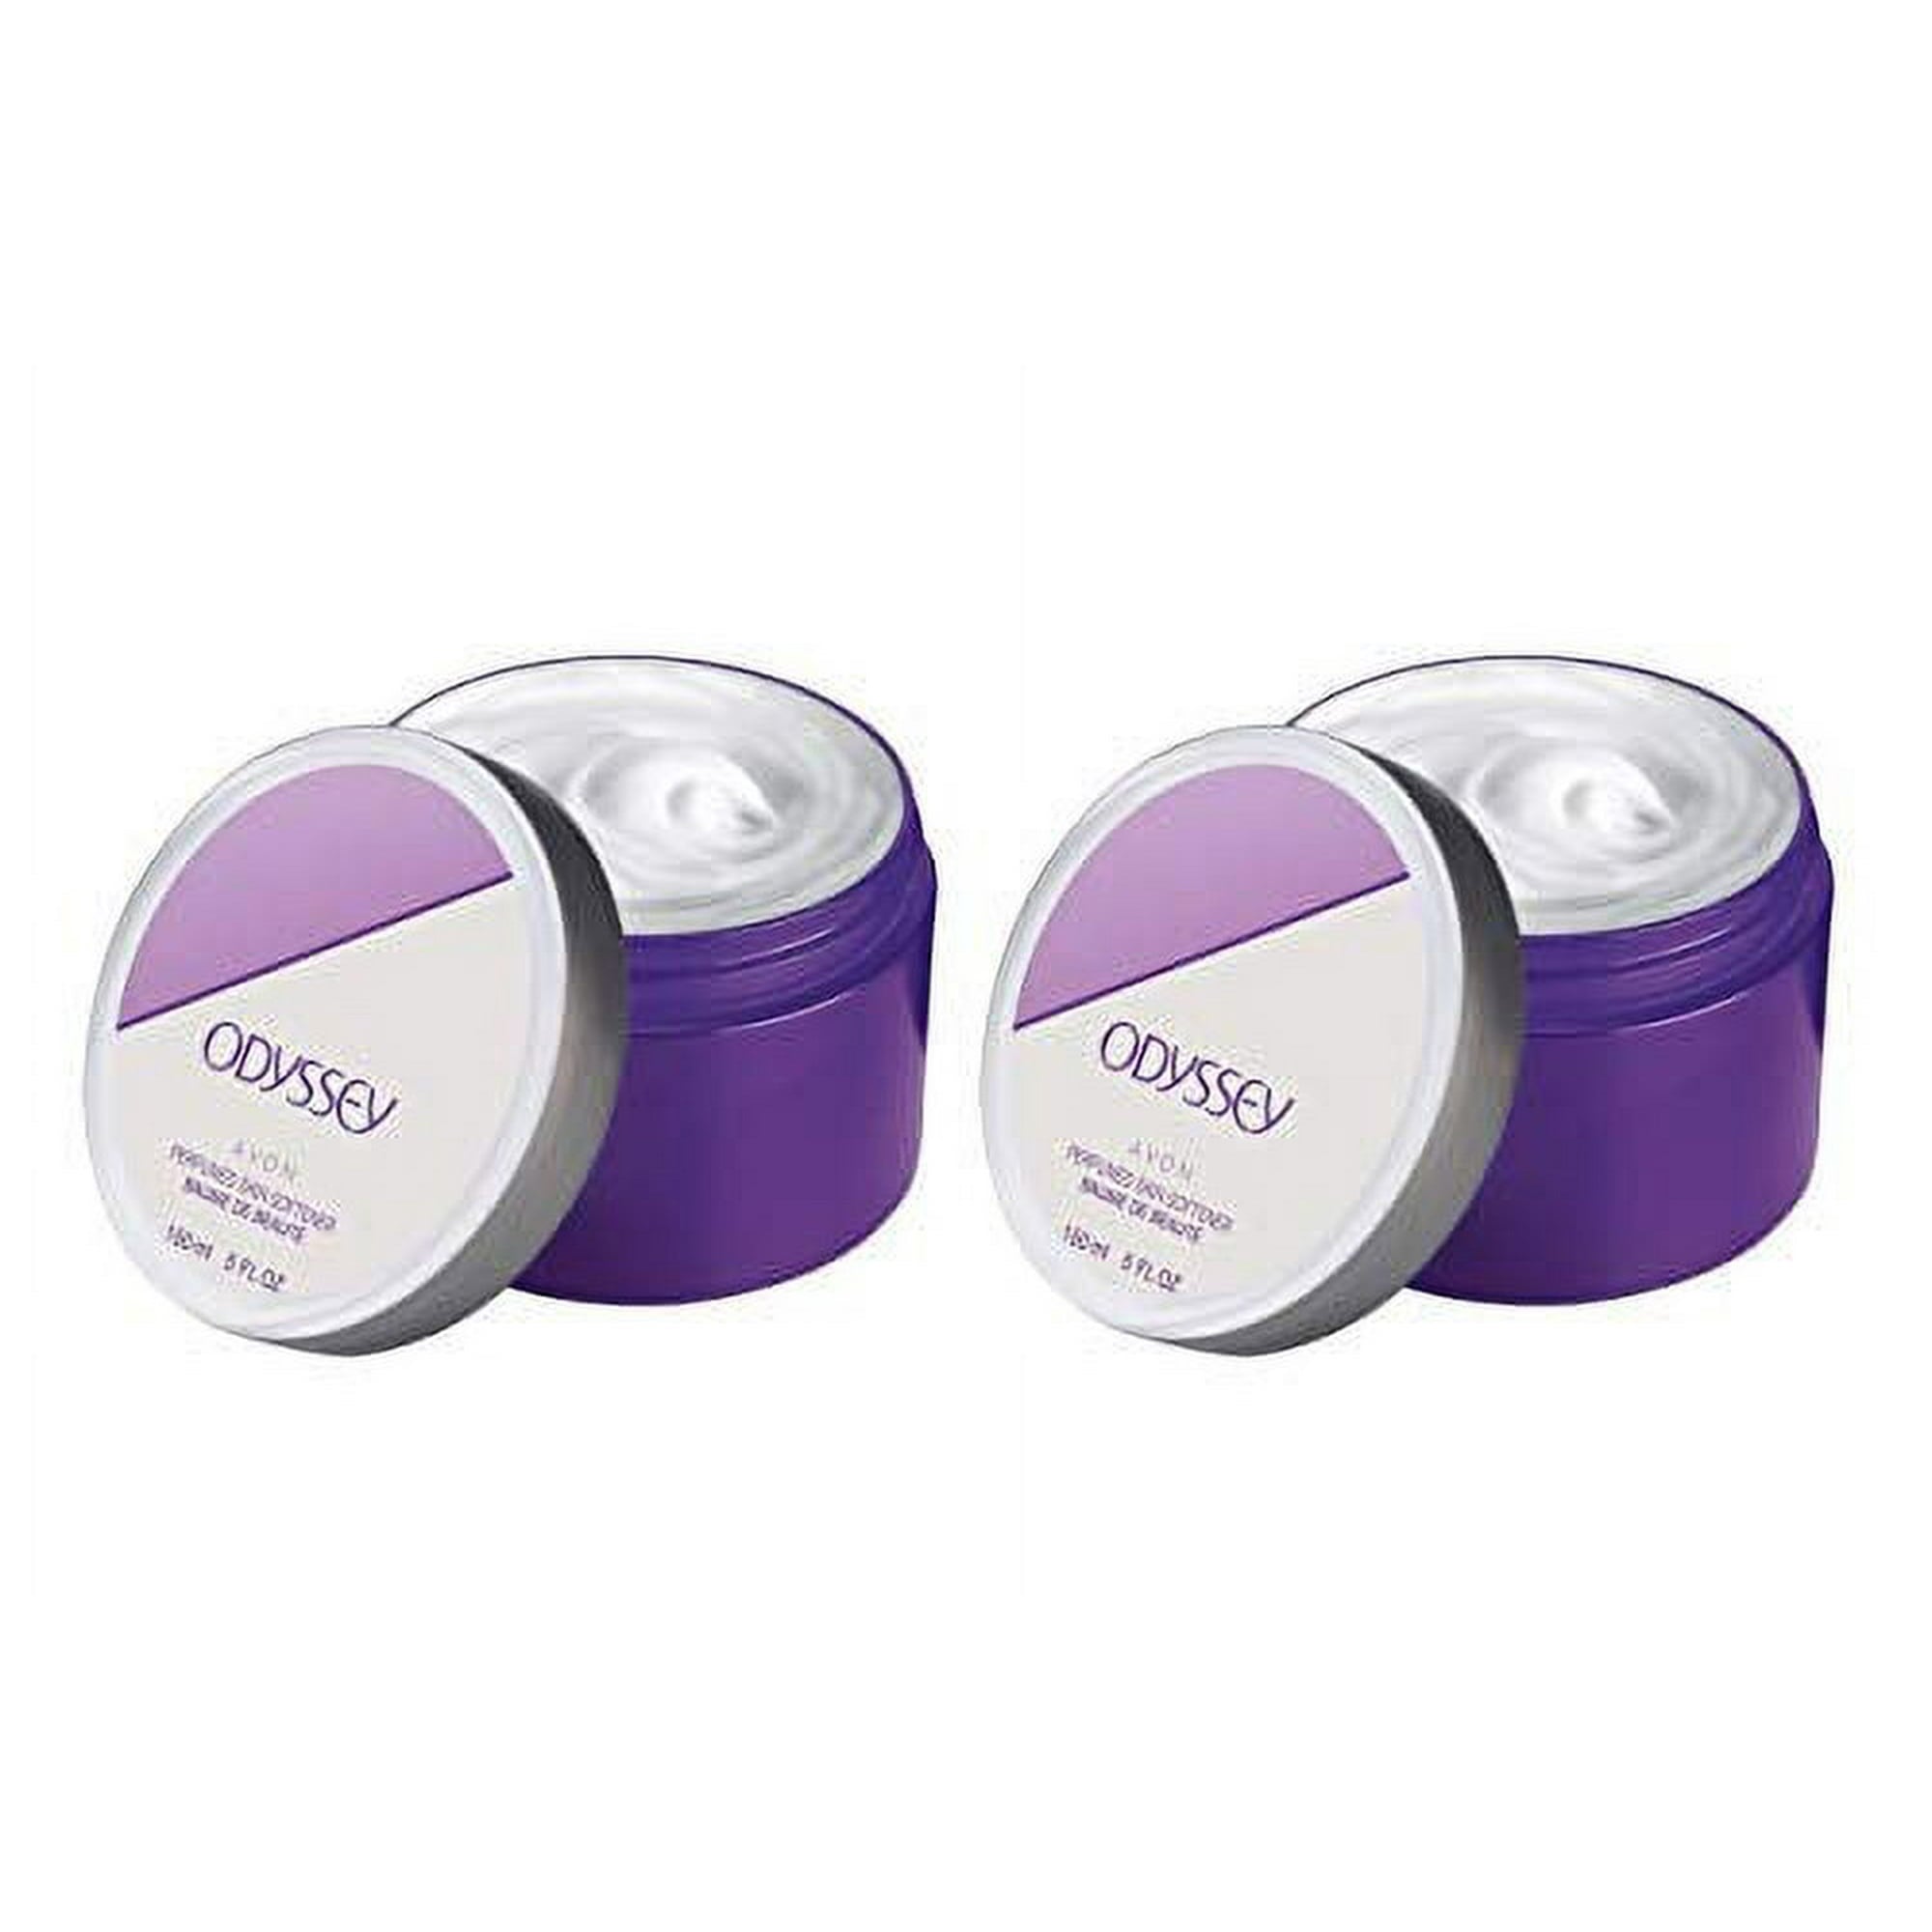 AVN-40788 Avon Odyssey Perfumed Skin Softener 5oz (Pack of 2)